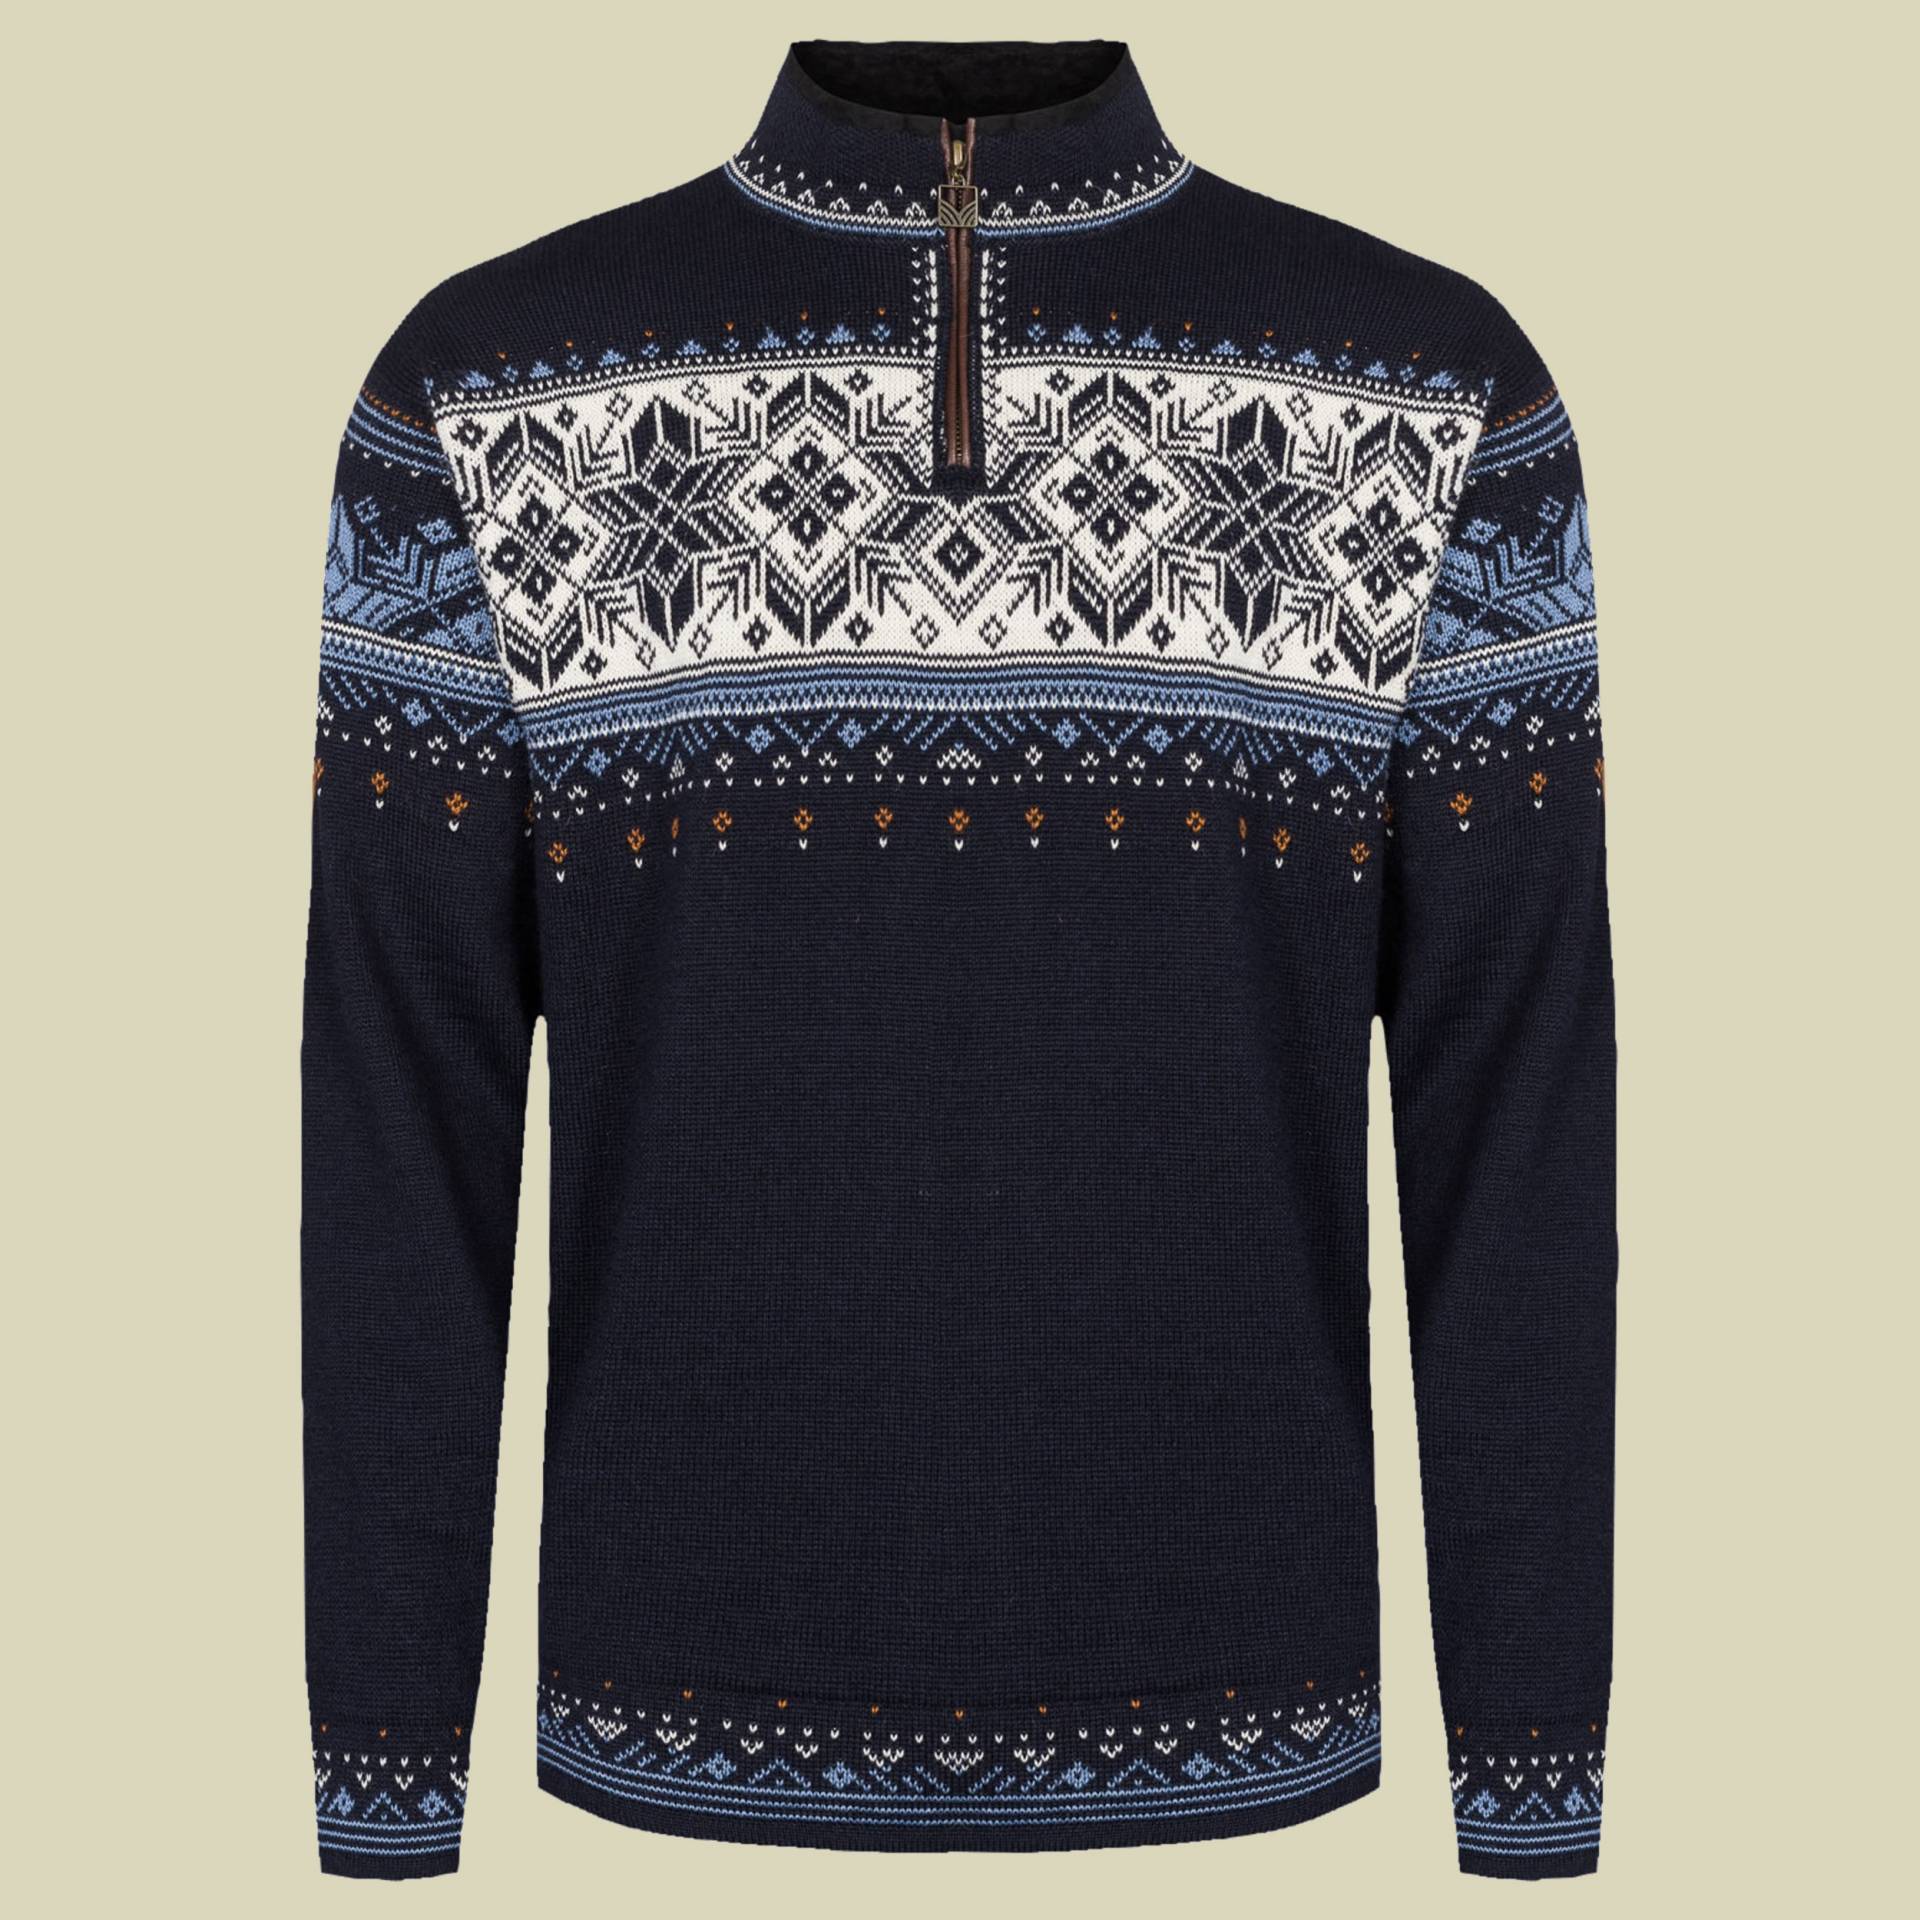 Blyfjell Unisex Sweater Größe XXL Farbe navy-blue shadow-off white von Dale of Norway